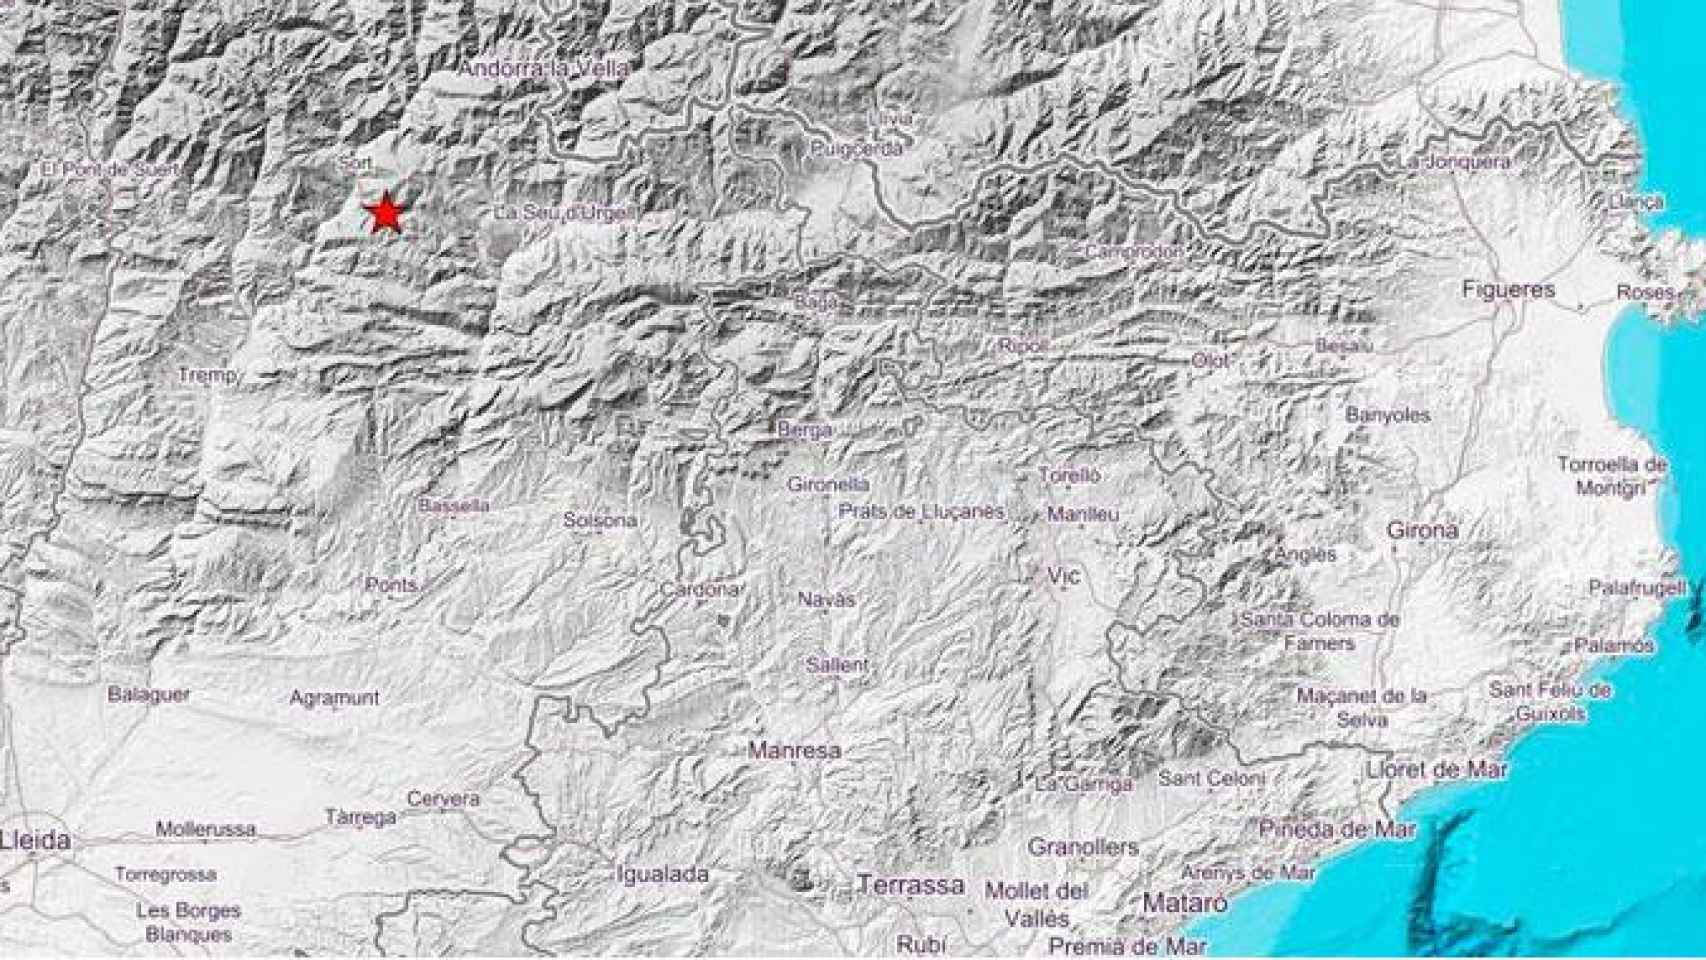 El epicentro del terremoto en el municipio de Soriguella, en Lleida / Instituto Cartográfico y Geológico de Cataluña